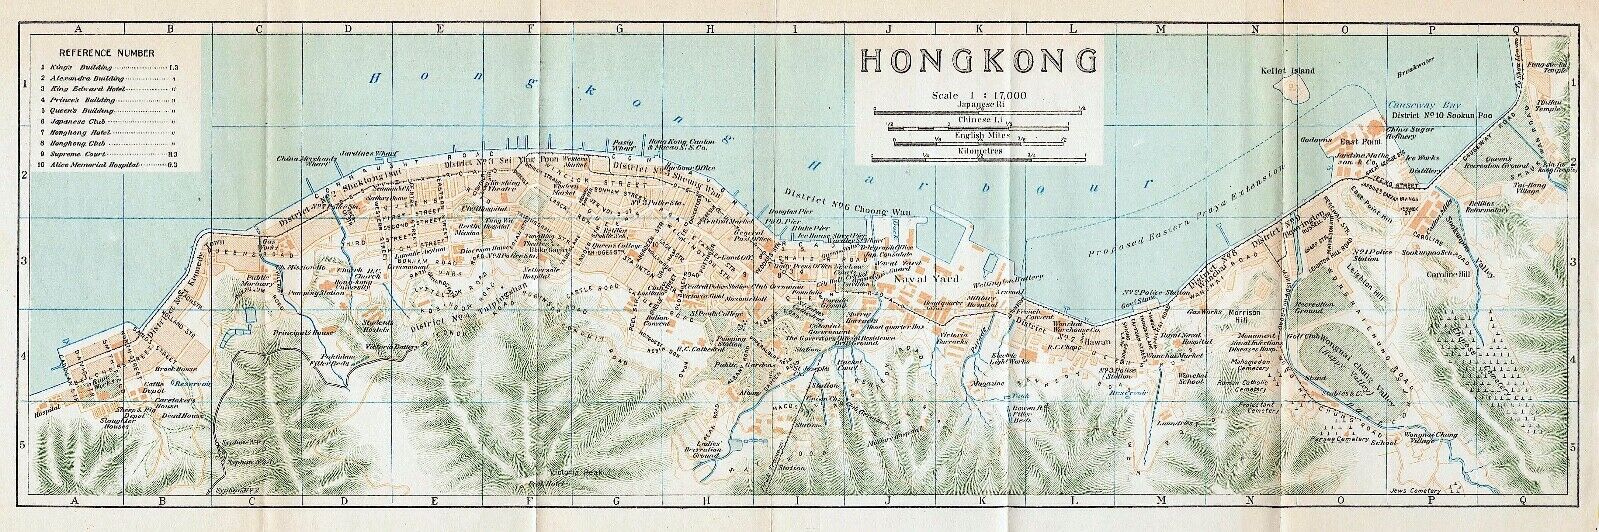 Original 1924 color map of Hong Kong, China- 香港